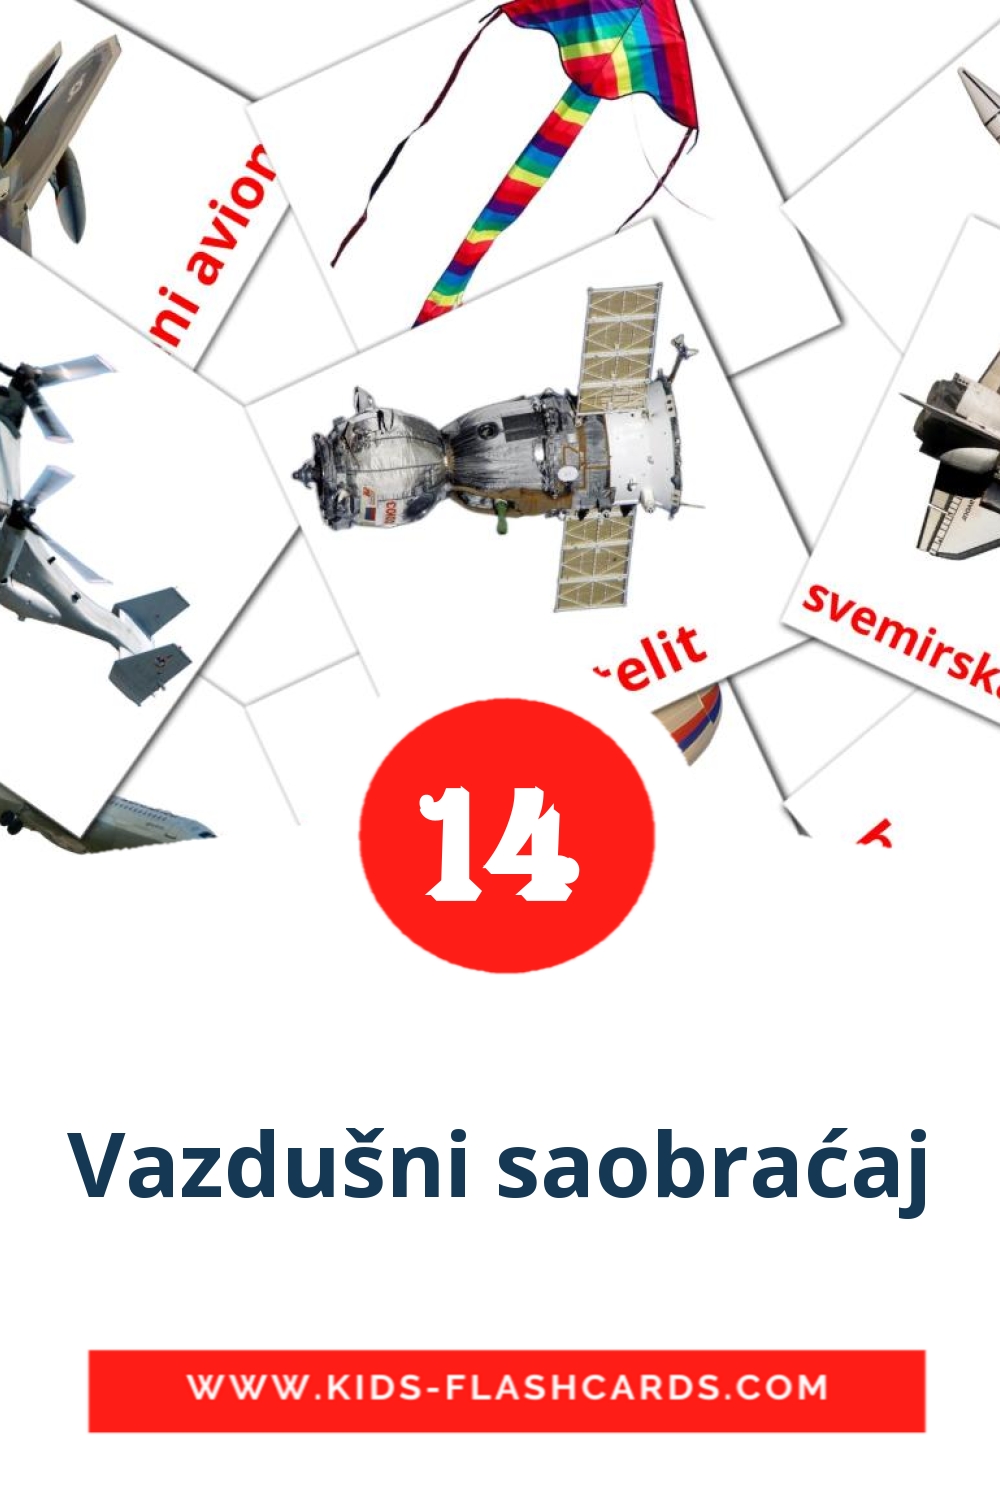 14 Cartões com Imagens de Vazdušni saobraćaj para Jardim de Infância em macedônia